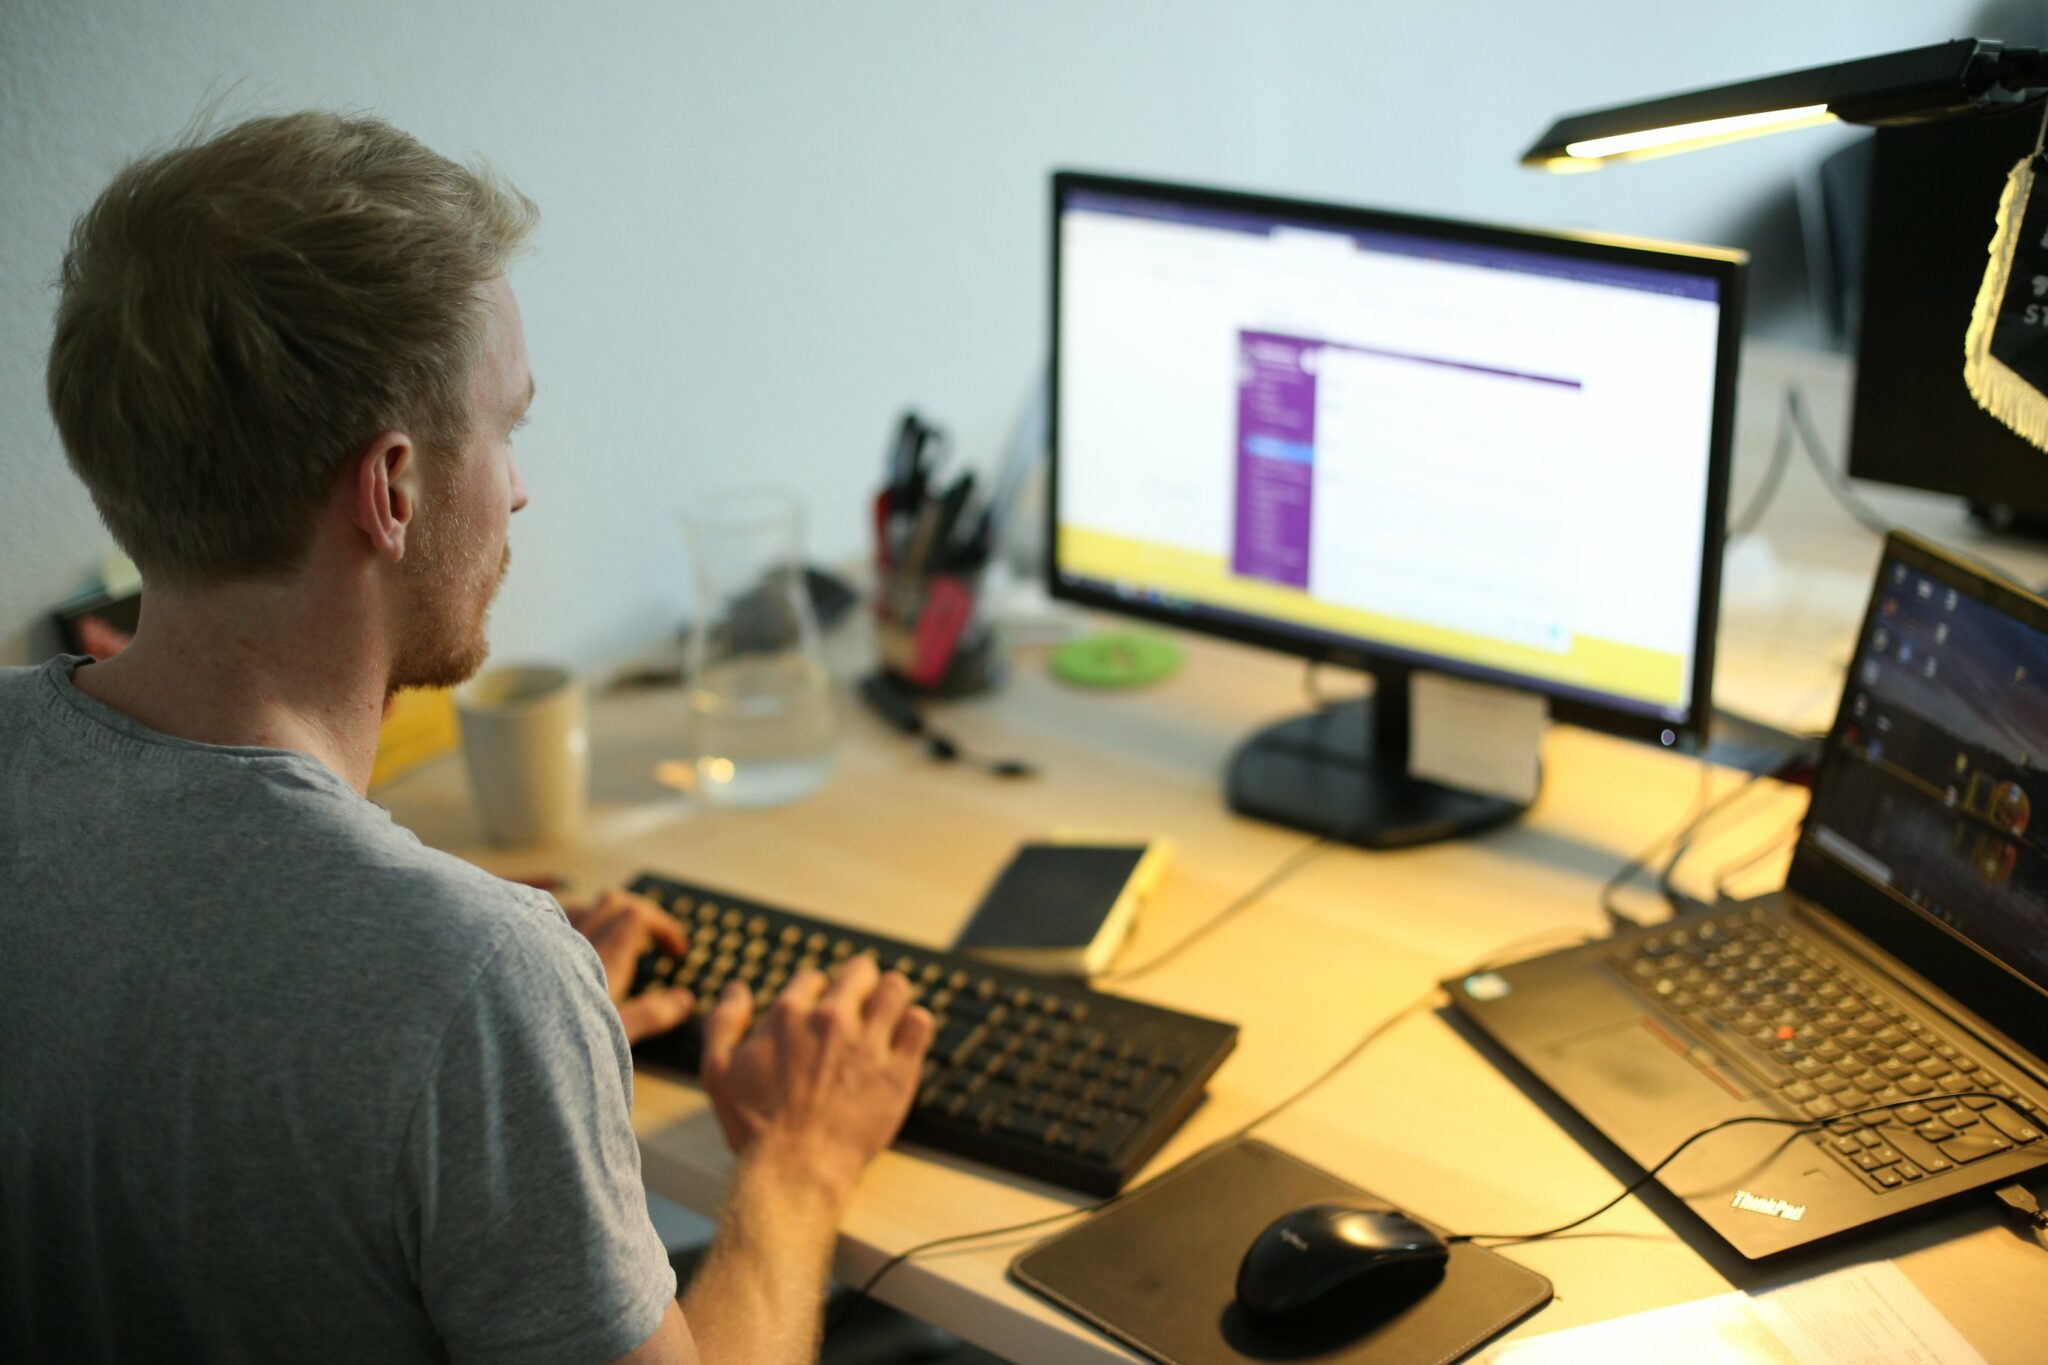 Foto zeigt einen jungen Mann im Halbprofil, der vor einem Laptop und einem zweiten Bildschirm im Schein einer Schreibtischlampe arbeitet.